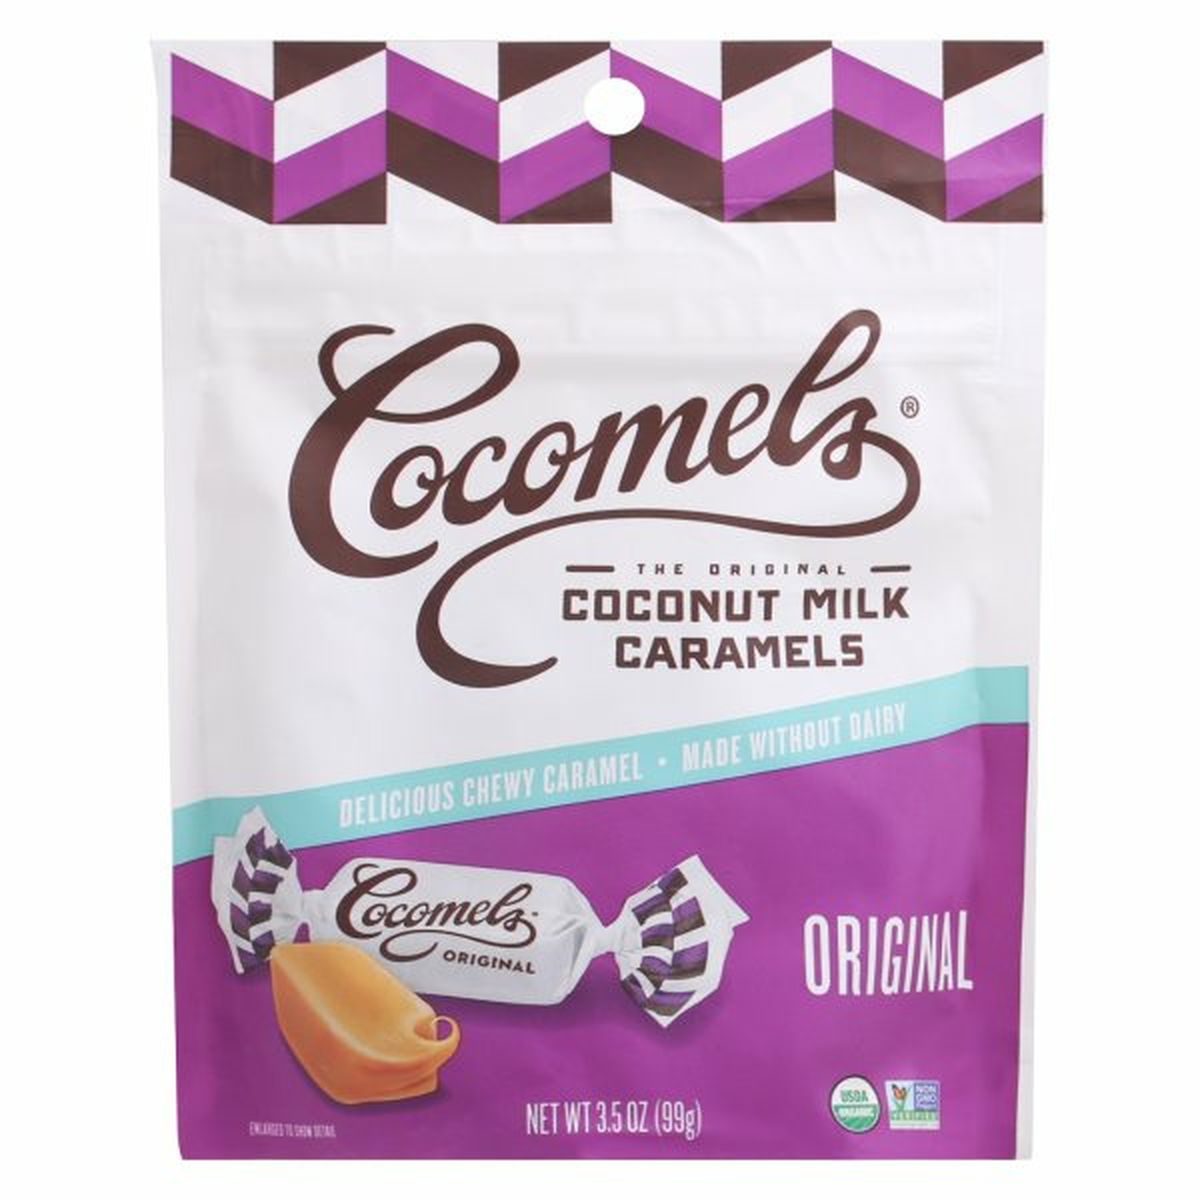 Calories in Cocomels Coconut Milk Caramels, Original